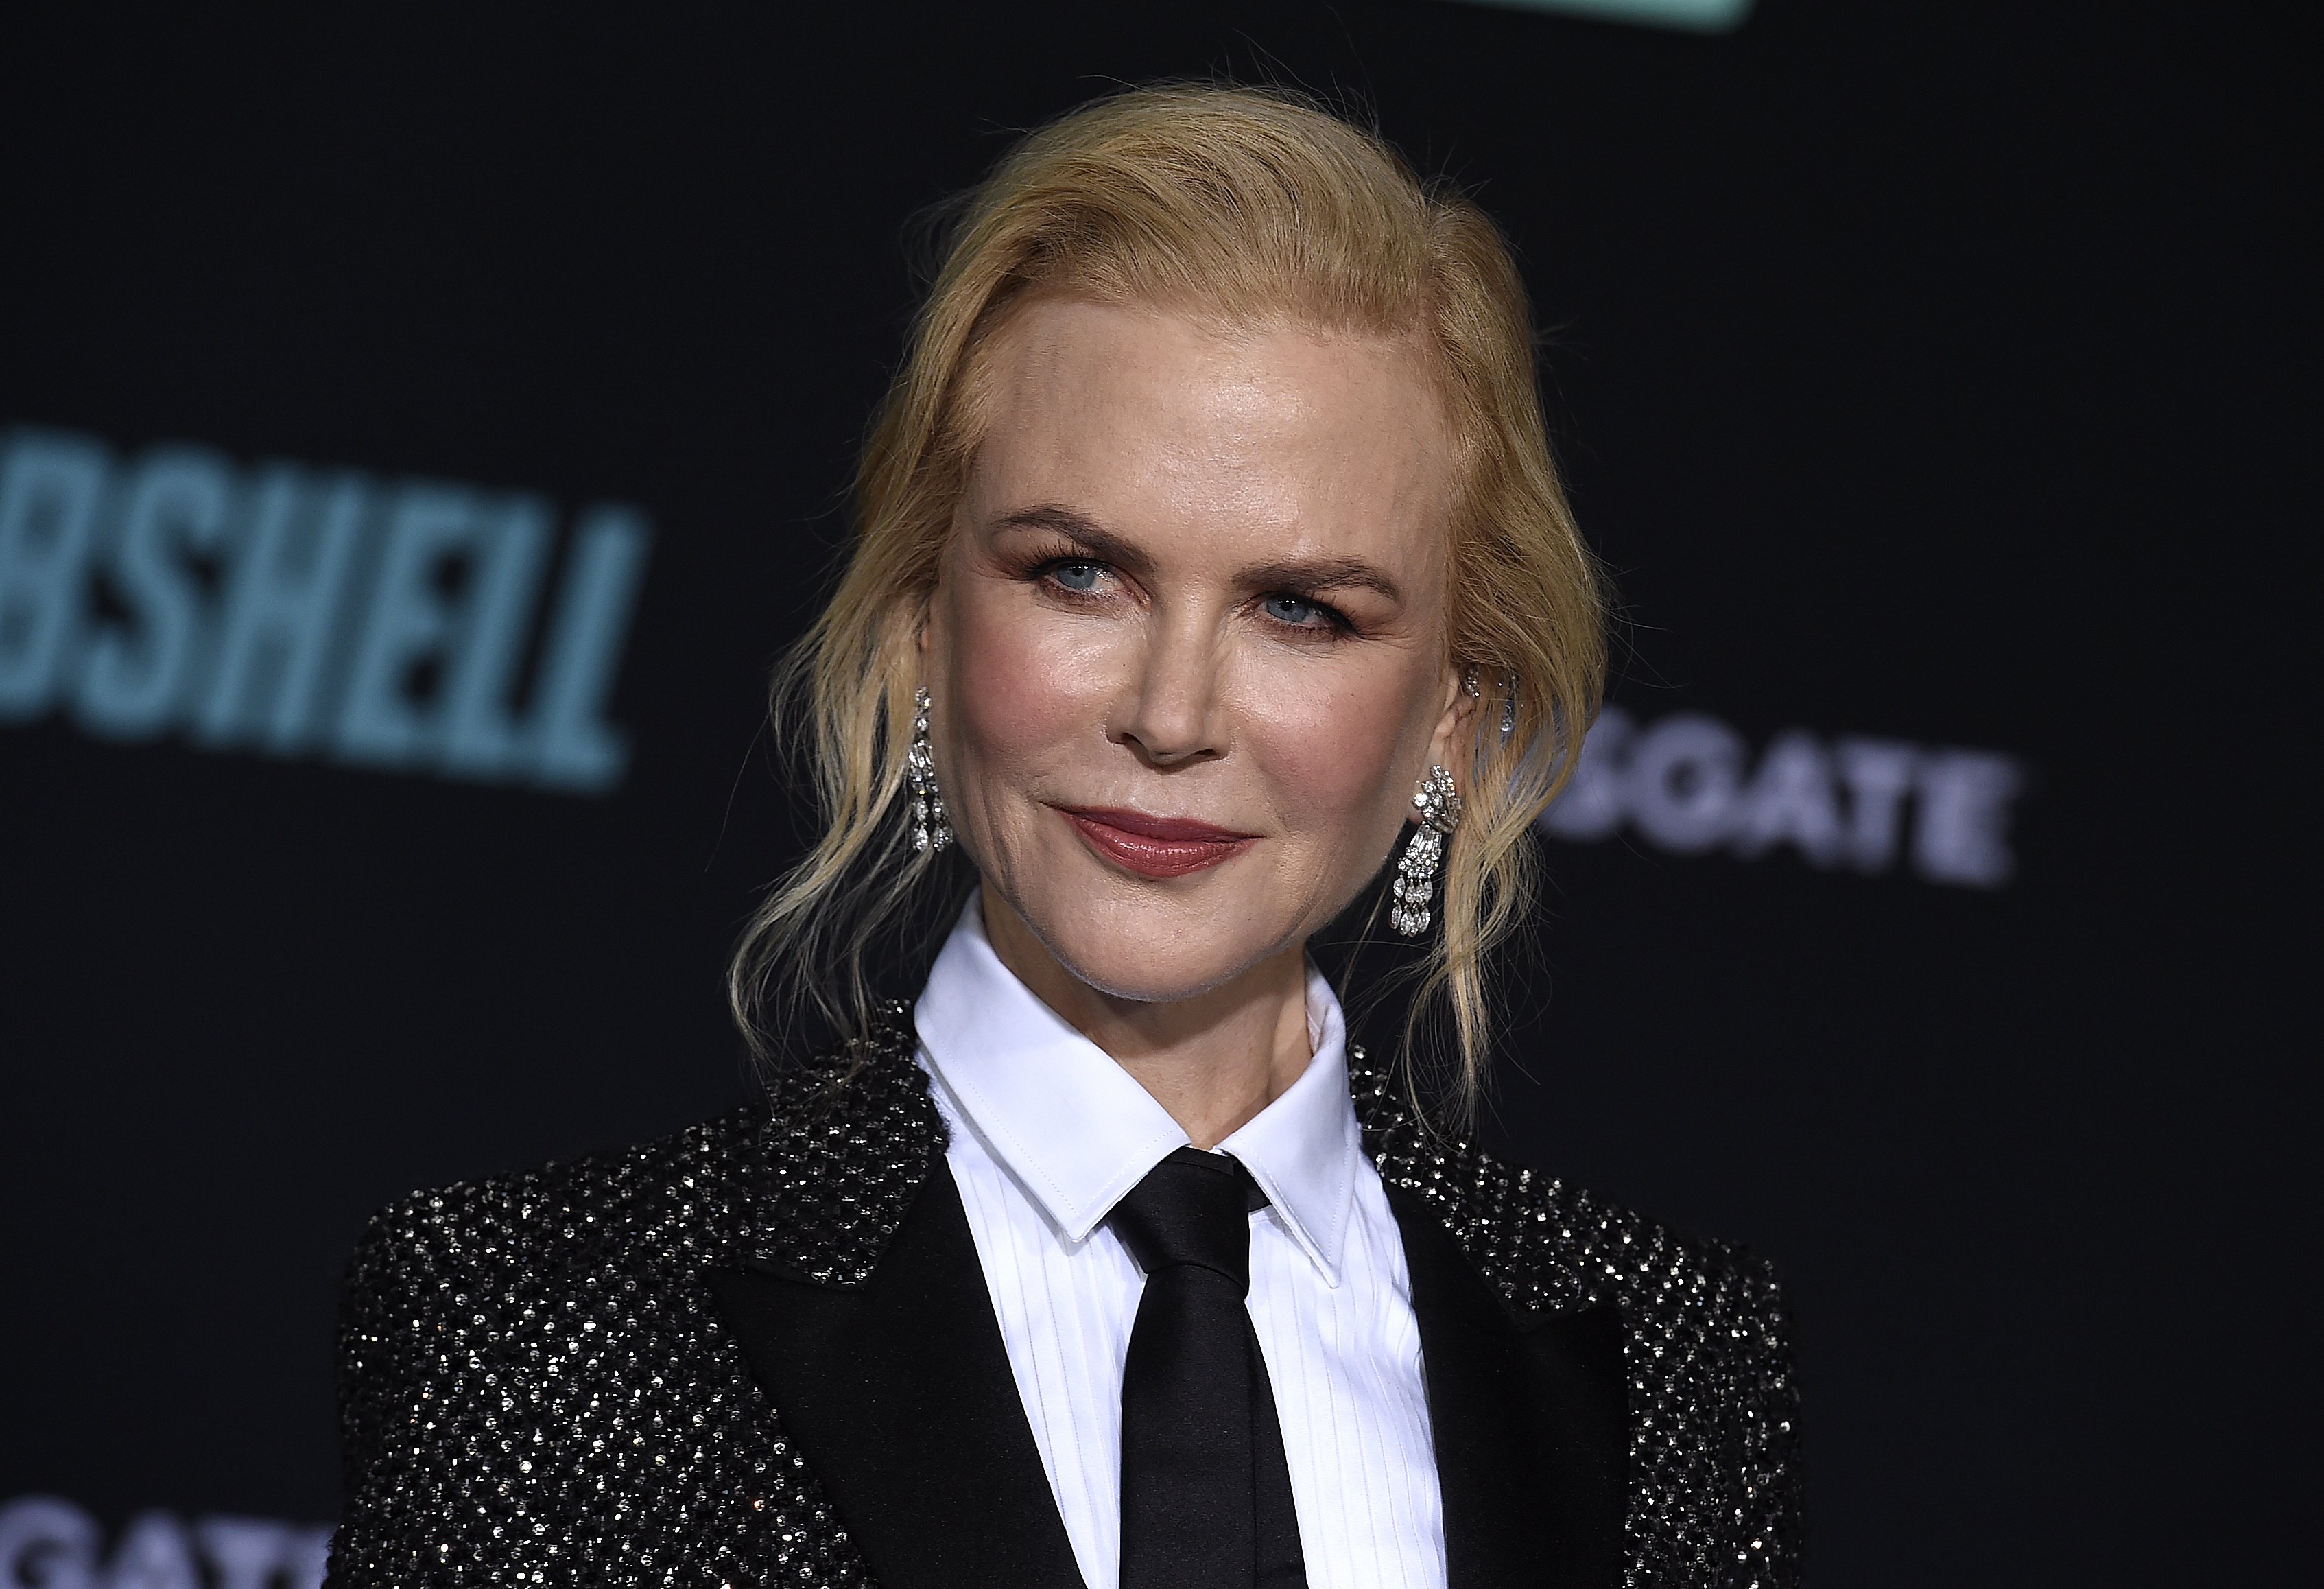 Nicole Kidman ja no és així: la millor operada dels Oscars. Espectacular als 55 anys